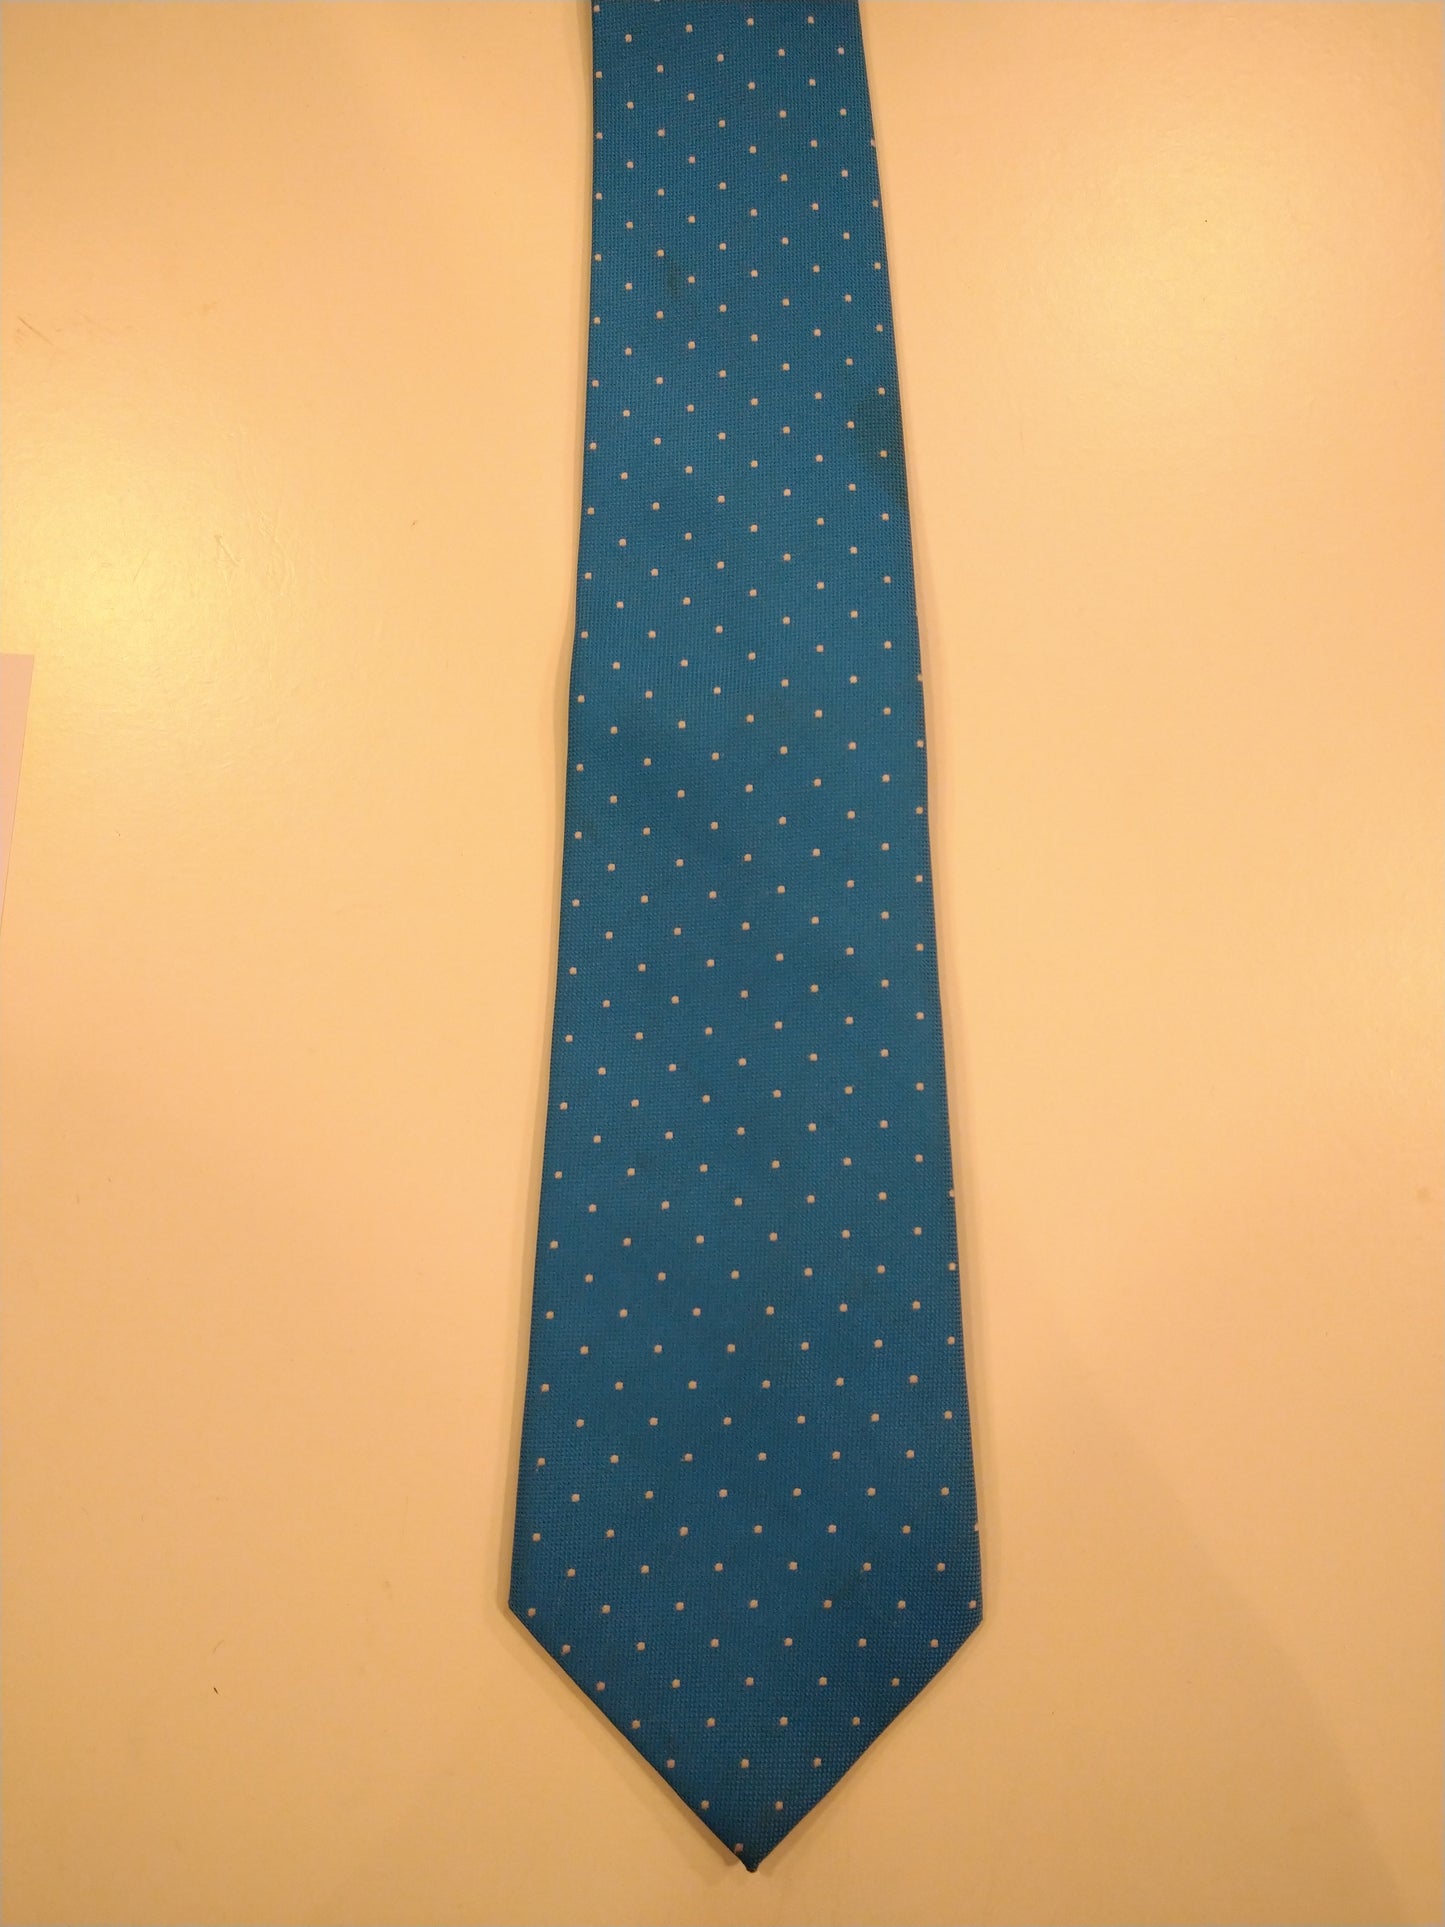 Lavorazione Artigianale tie. Blue white dot motif.